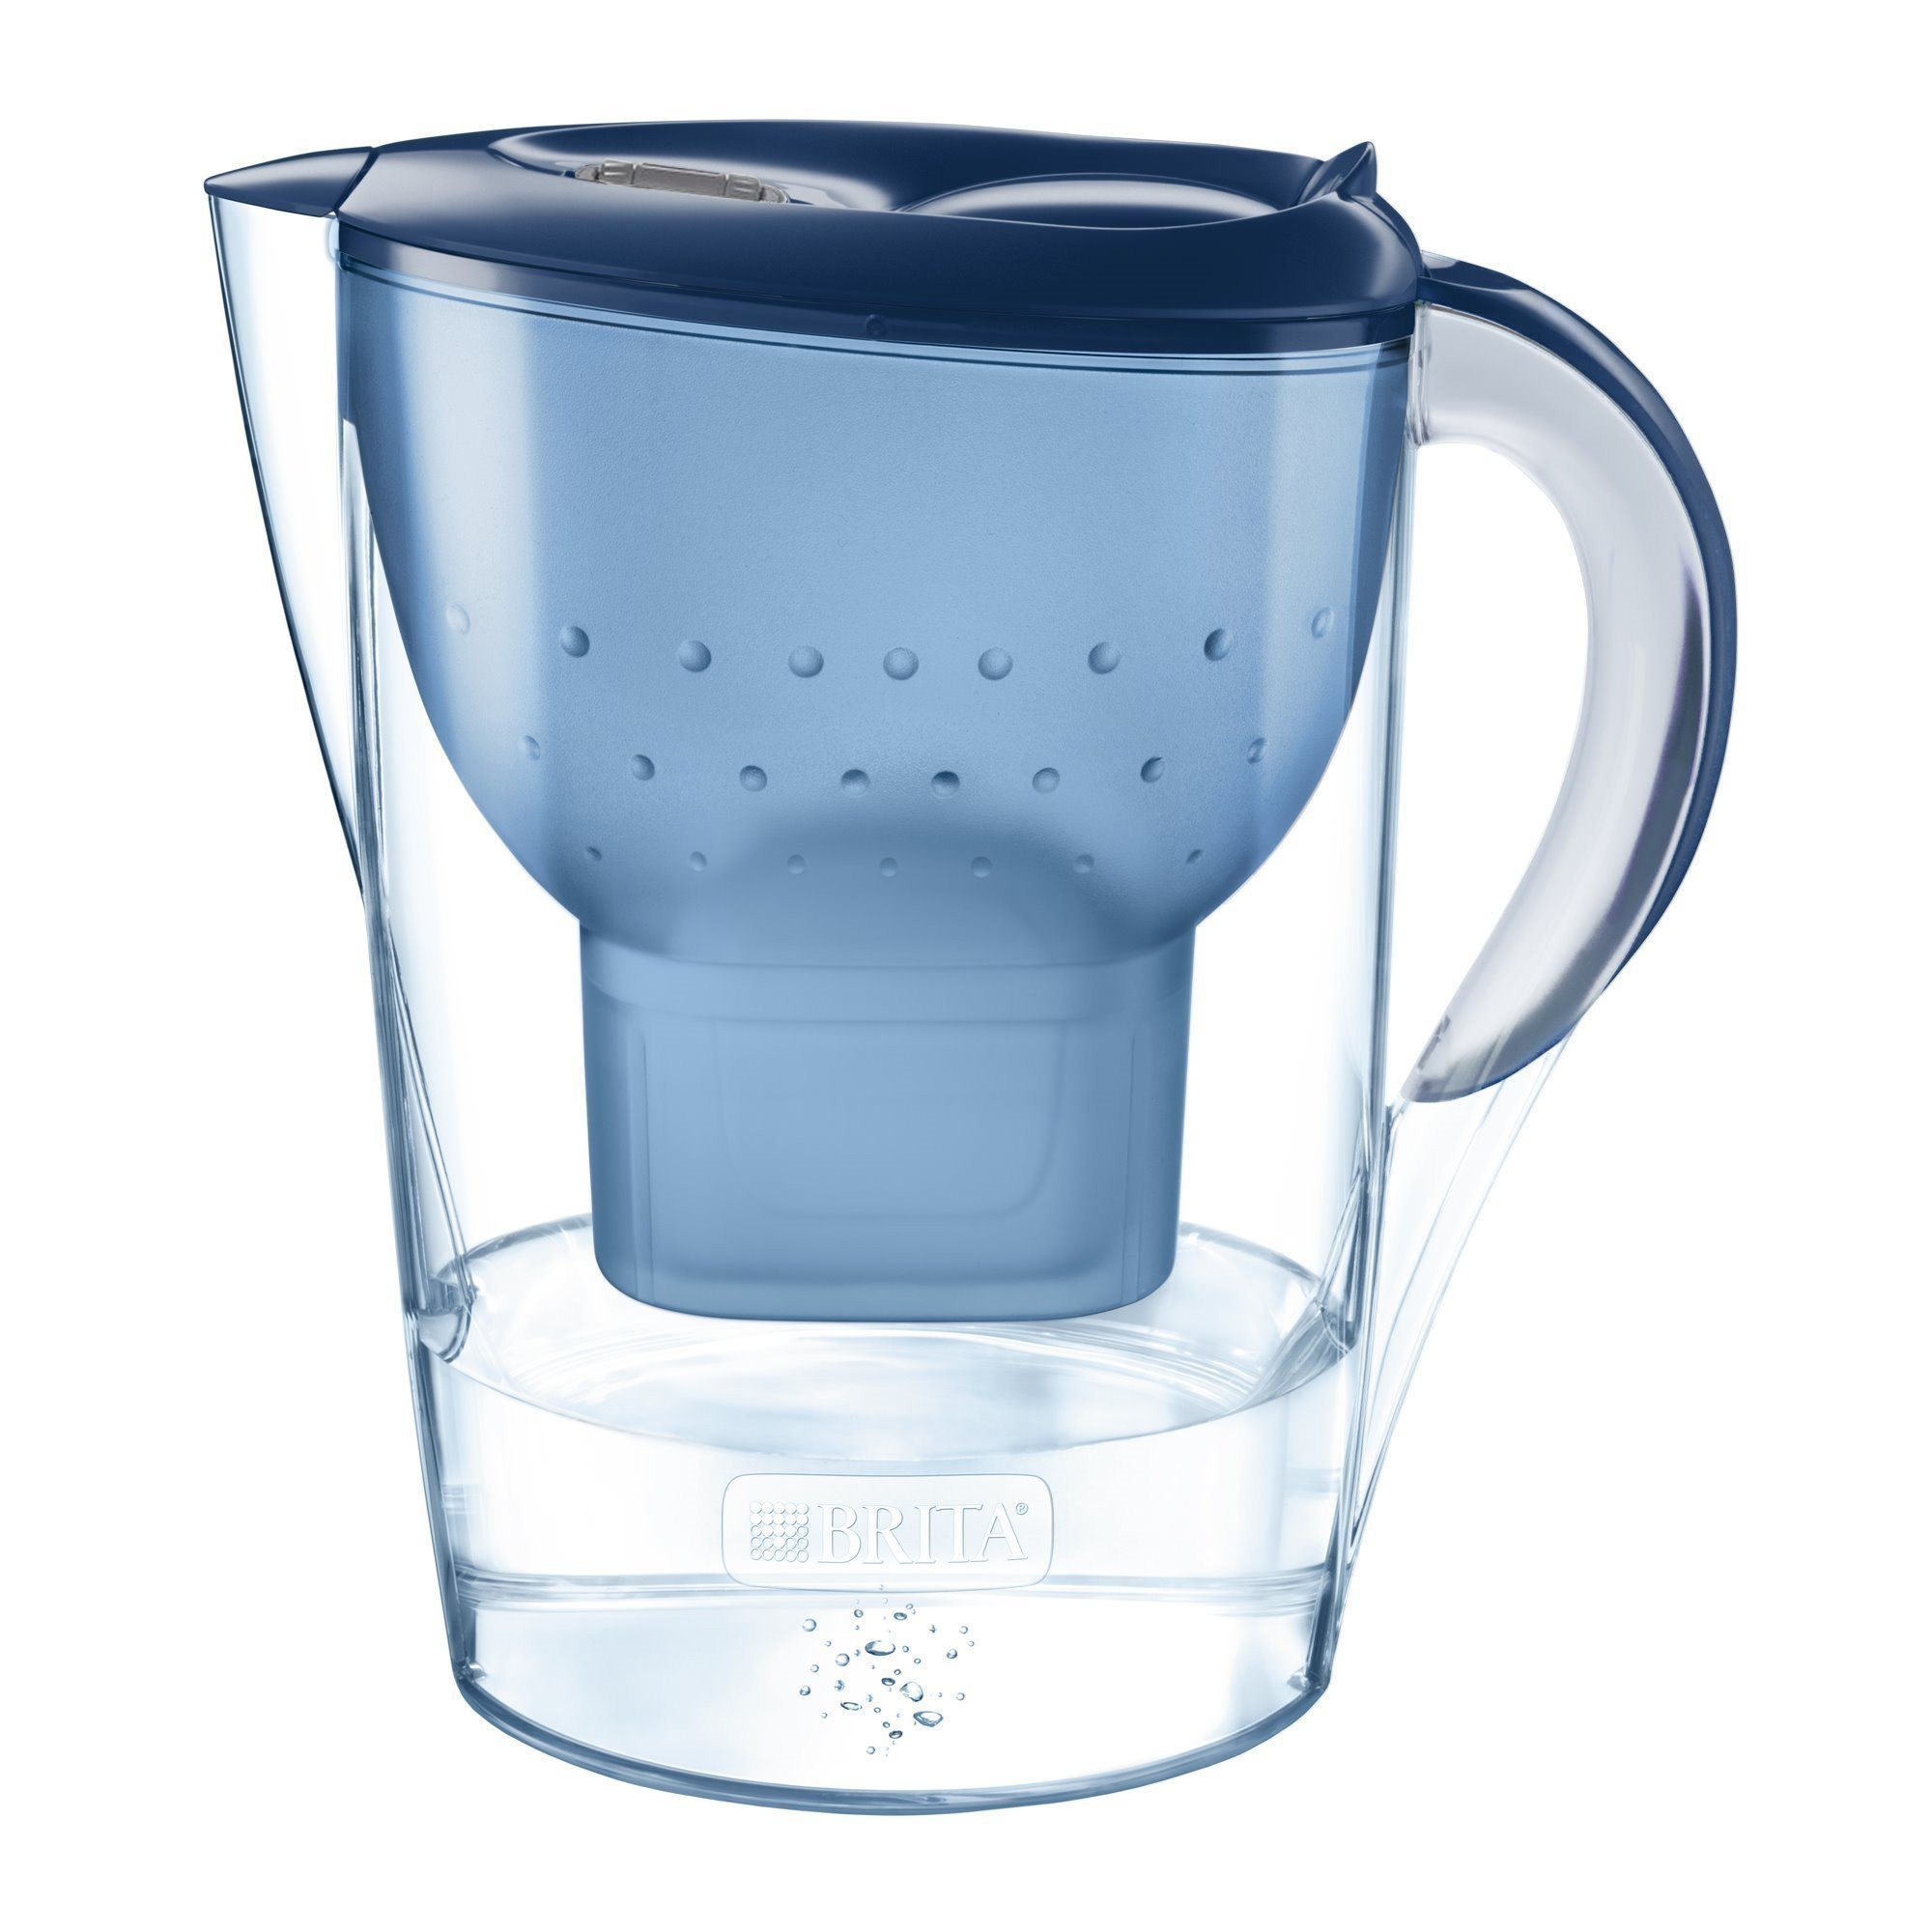 BRITA Gourde filtrante transparente bleue, réduit le chlore, le plomb et  autres impuretés organiques pour une eau du robinet plus pure, sans BPA, 1